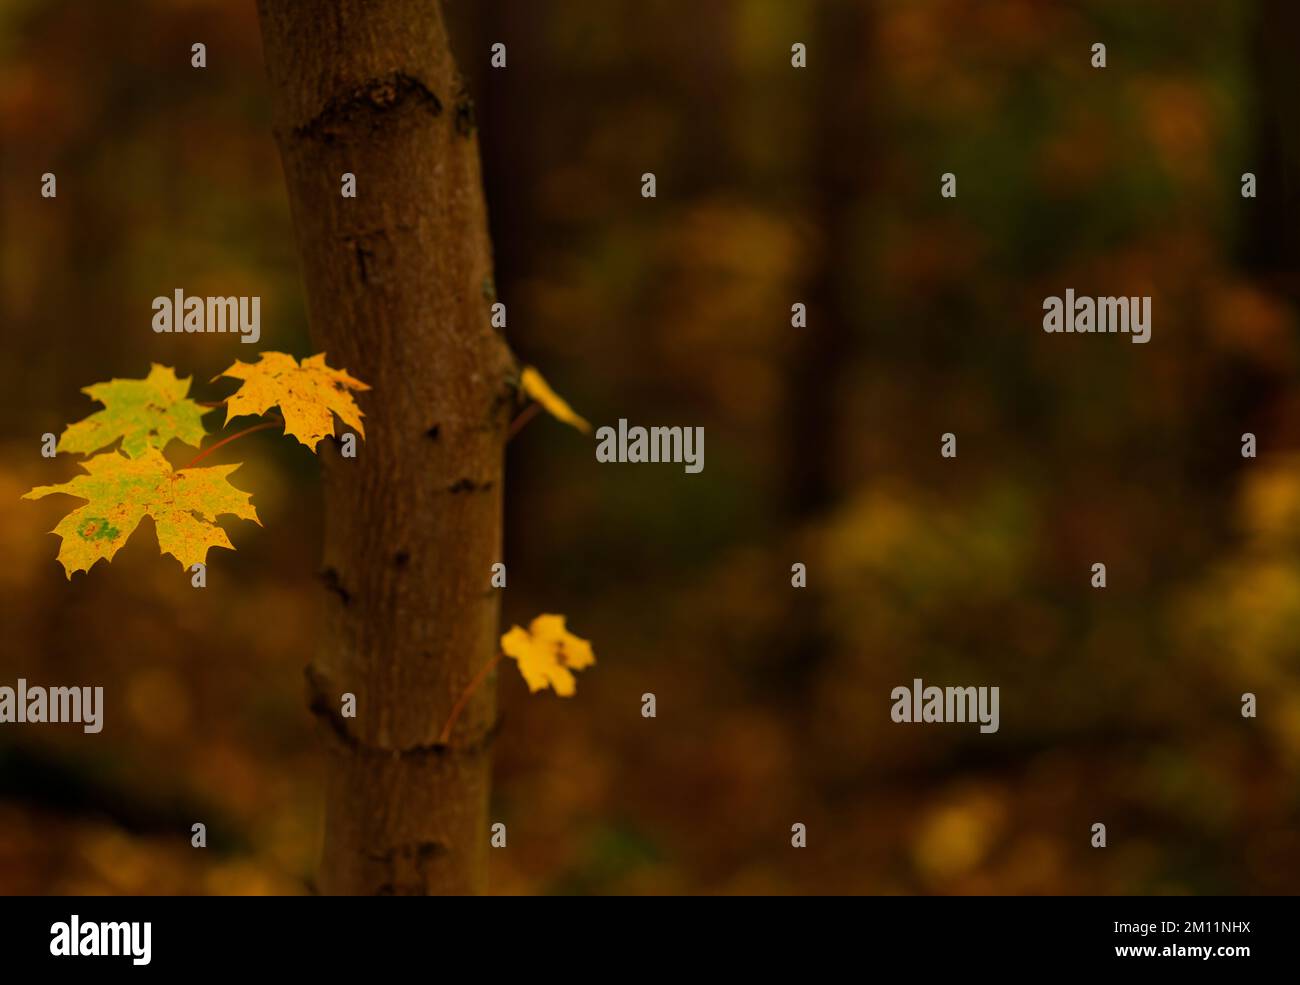 Baumstamm von einem Ahornbaum im Herbst mit gelben Blättern, sehr geringer Schärfentiefe, Fuzzy-Bokeh, Freiraum für Text Stockfoto